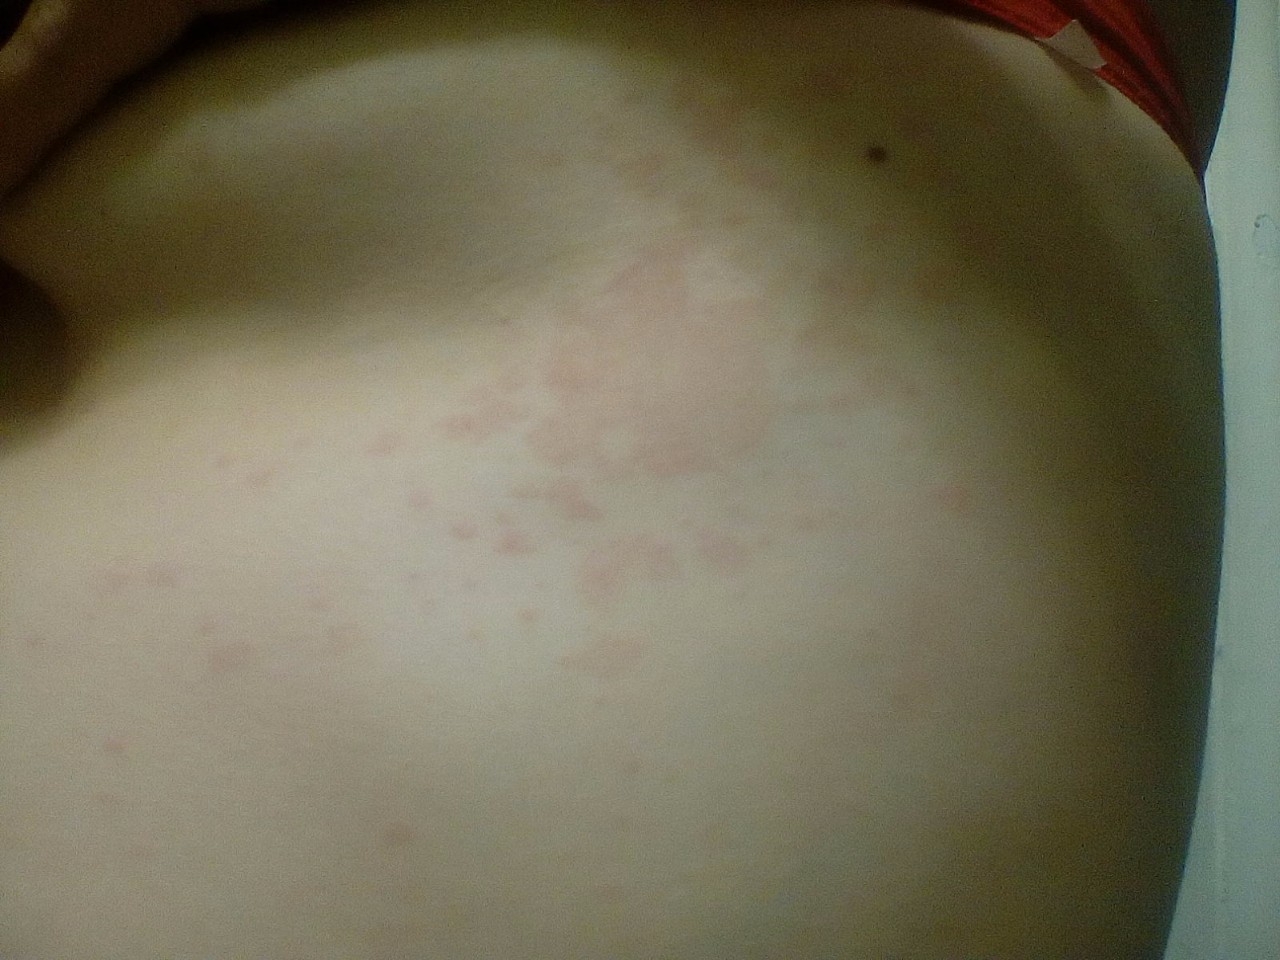 аллергия на груди у беременной фото 27